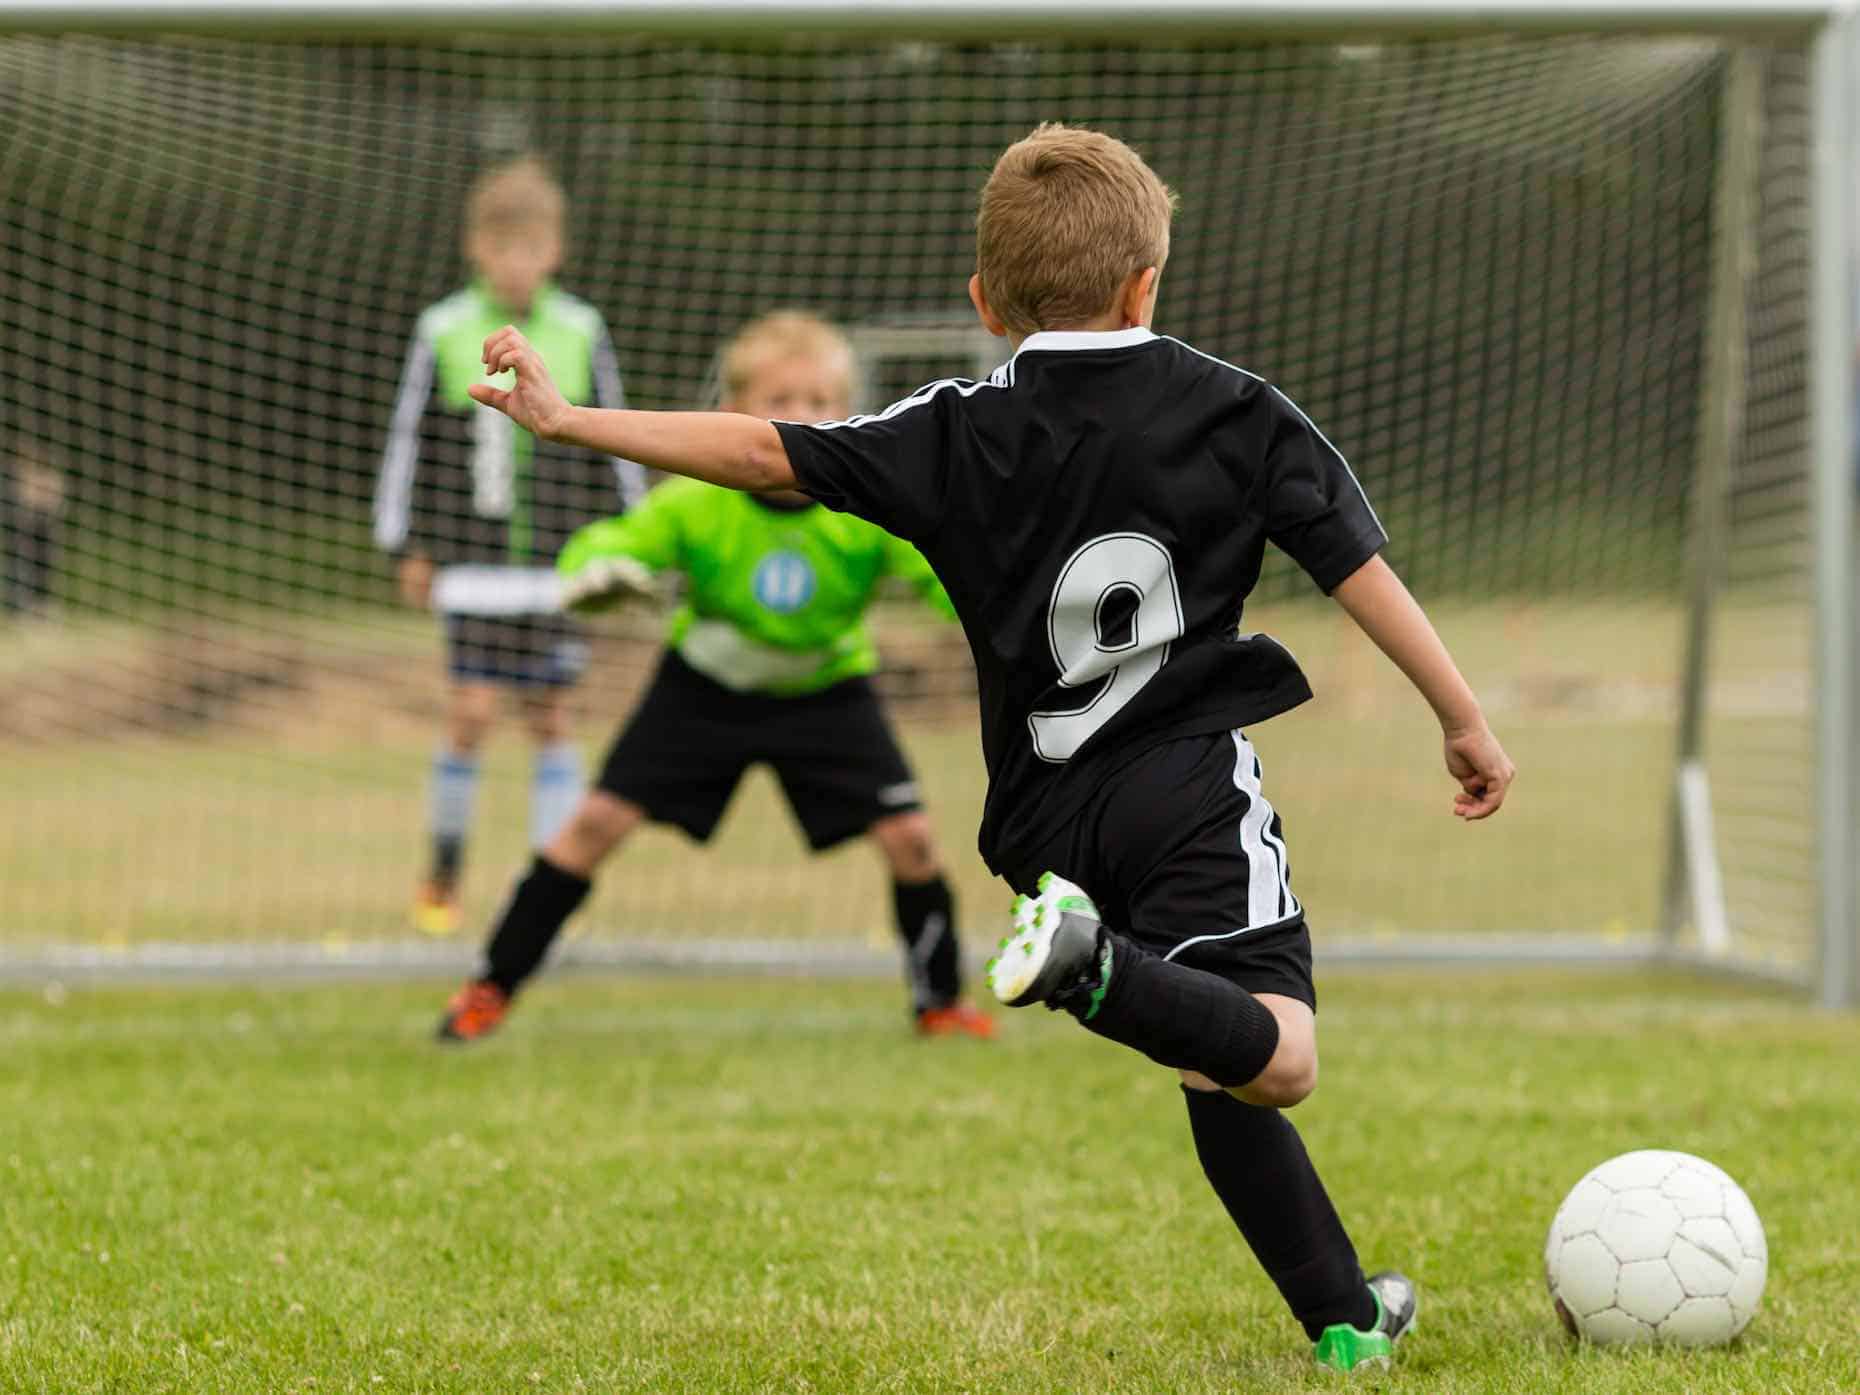 A quanti anni si può iniziare a giocare a calcio? - Amico Pediatra